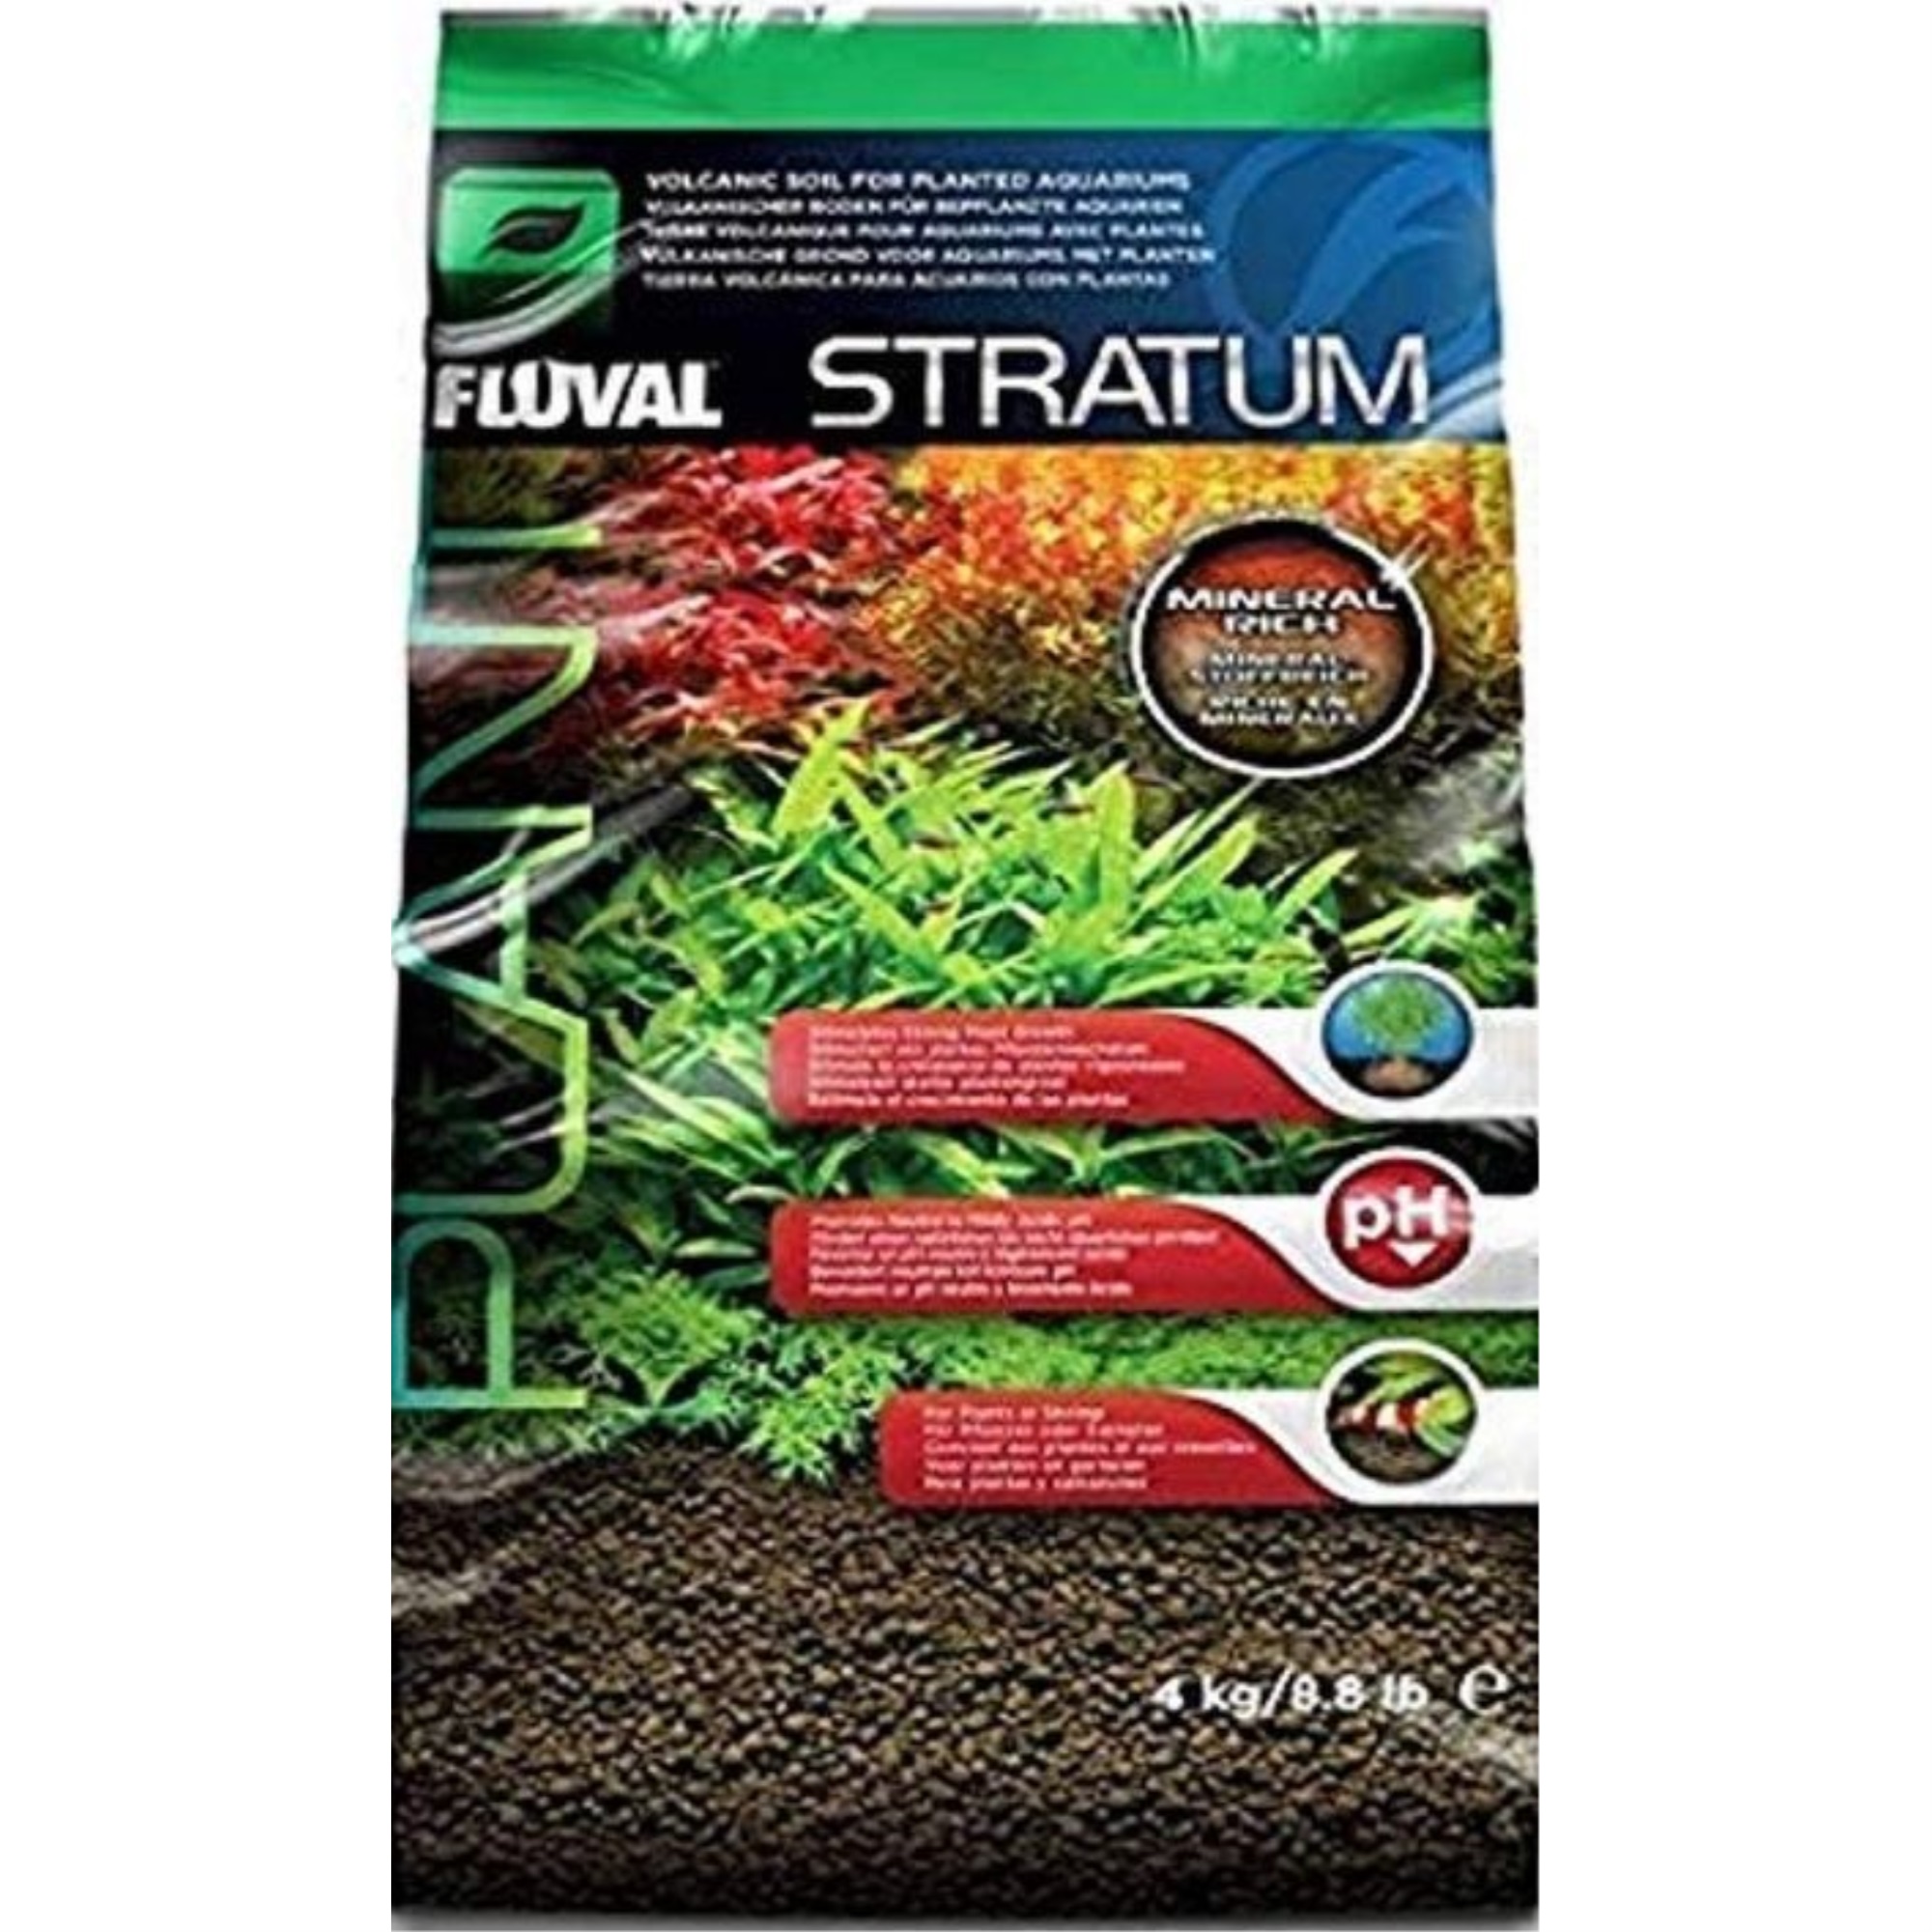 Fluval Plant and Shrimp Stratum Aquarium Substrate 8.8 lb